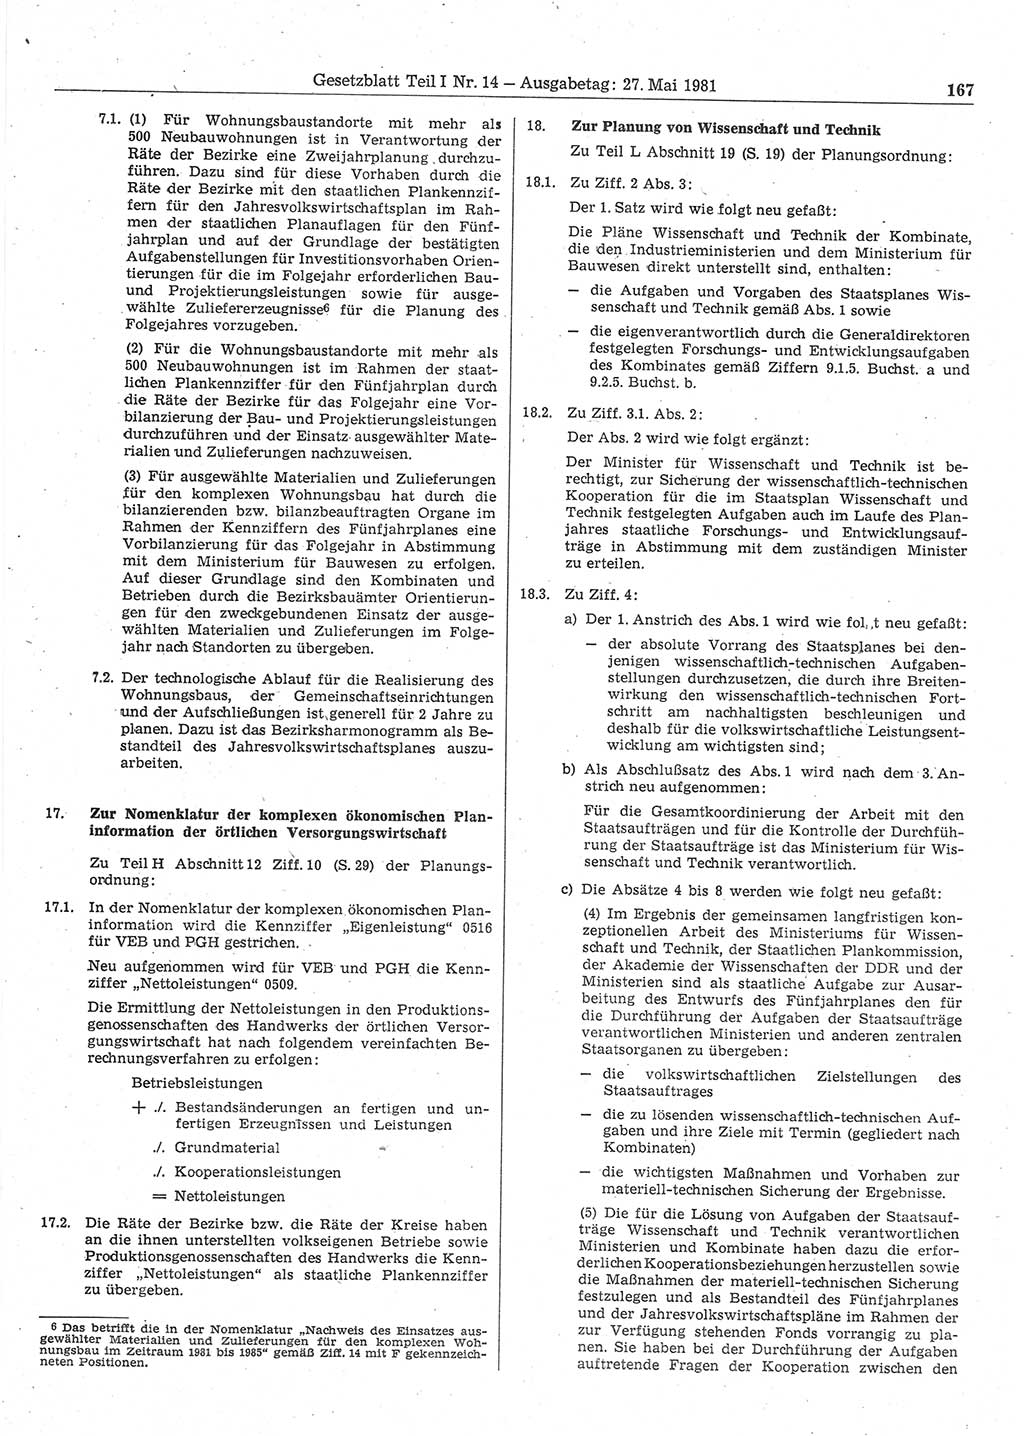 Gesetzblatt (GBl.) der Deutschen Demokratischen Republik (DDR) Teil Ⅰ 1981, Seite 167 (GBl. DDR Ⅰ 1981, S. 167)